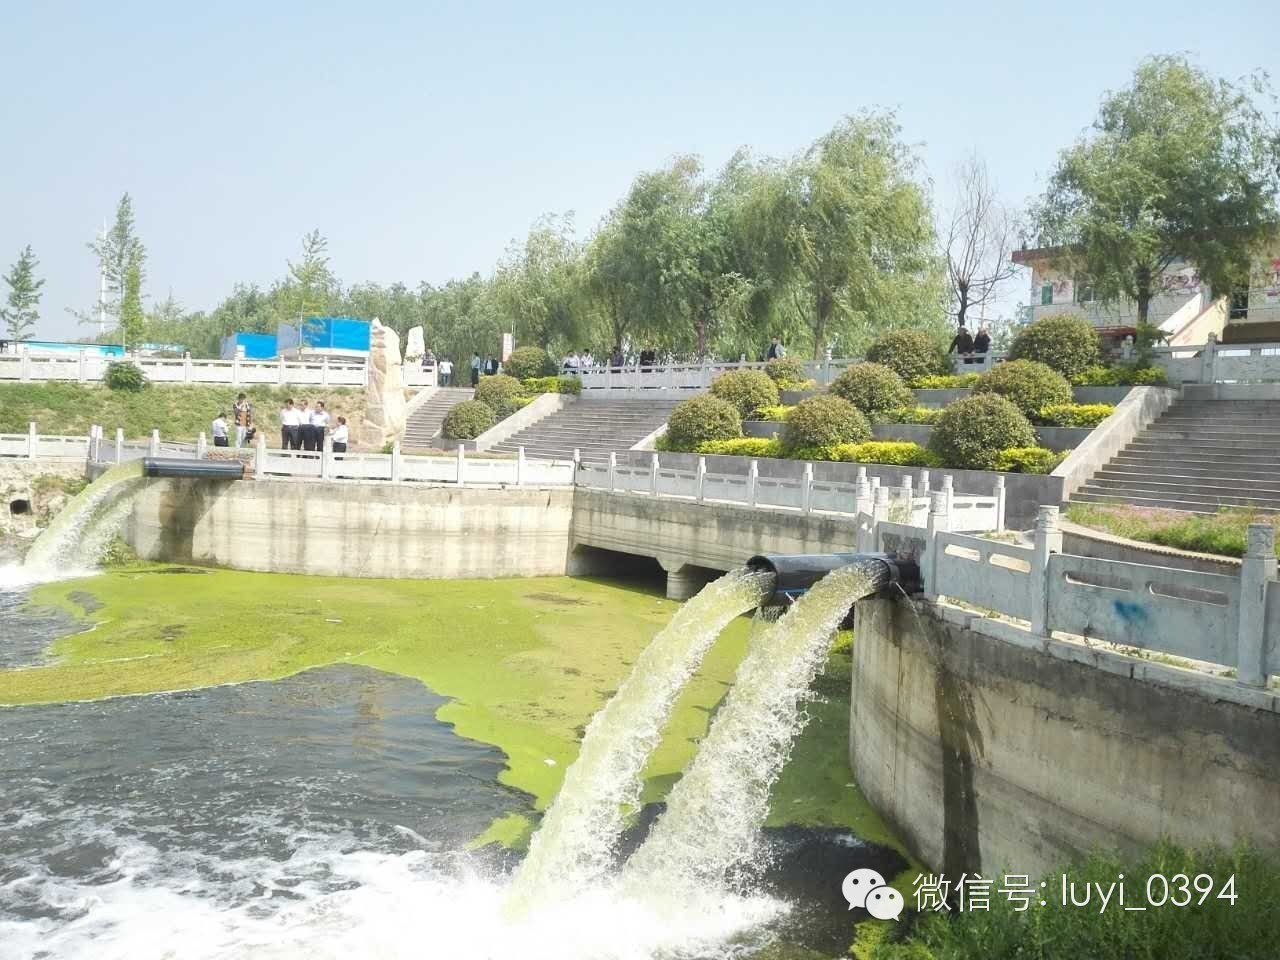 据了解,风景河,护城河,闫沟河,鹿辛运河,集三道河的治理工程全长30.